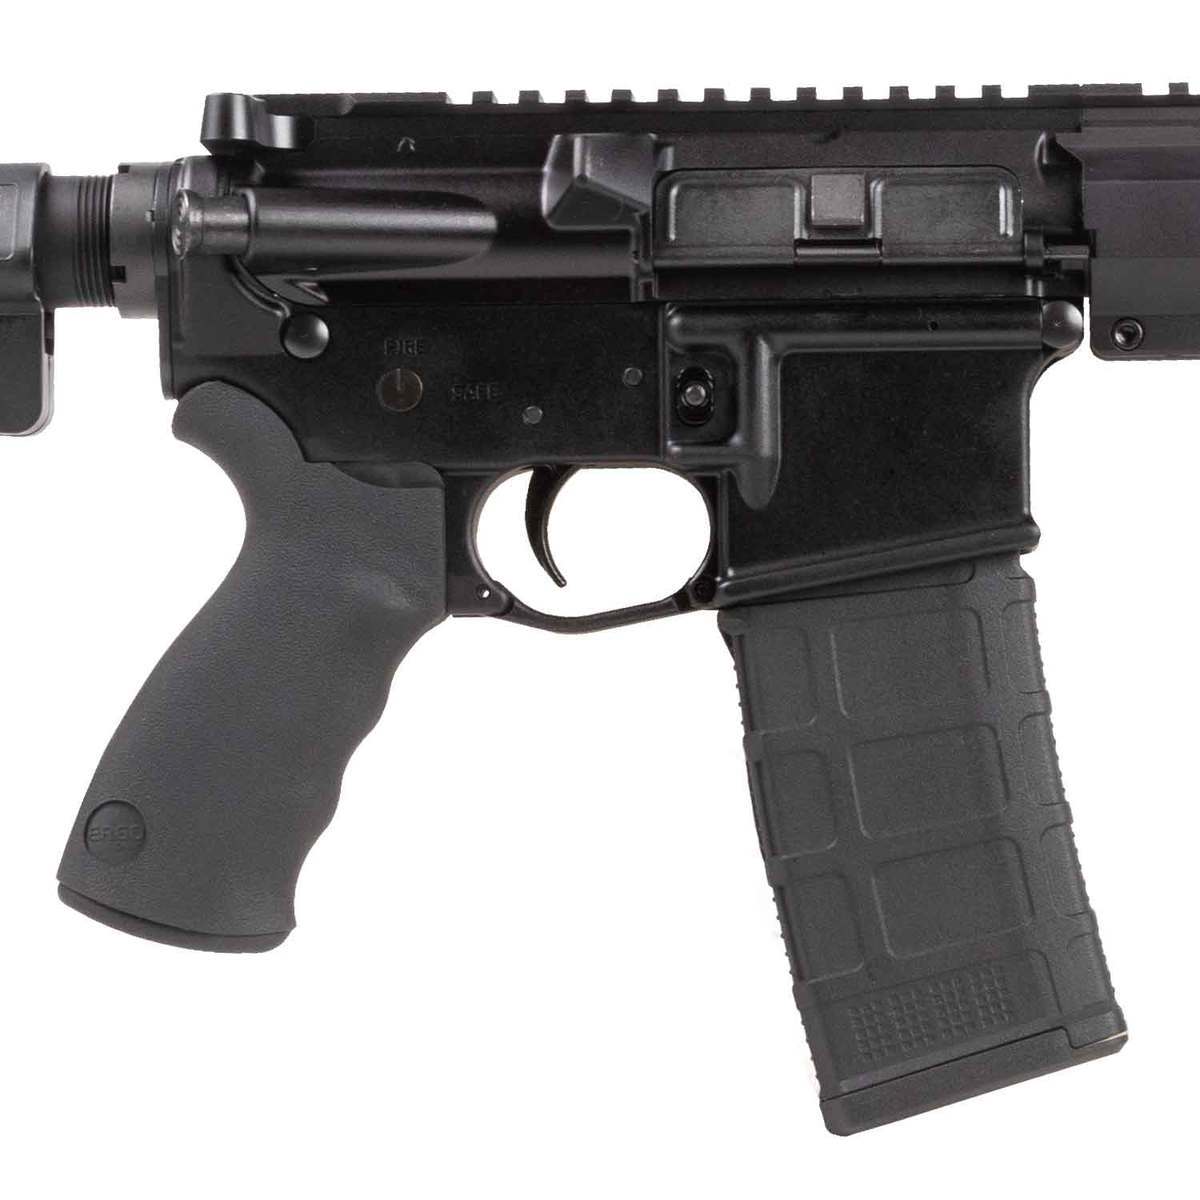 Del-Ton Sierra 316L 5.56mm NATO 16in Black Semi Automatic Rifle - 30+1 Rounds